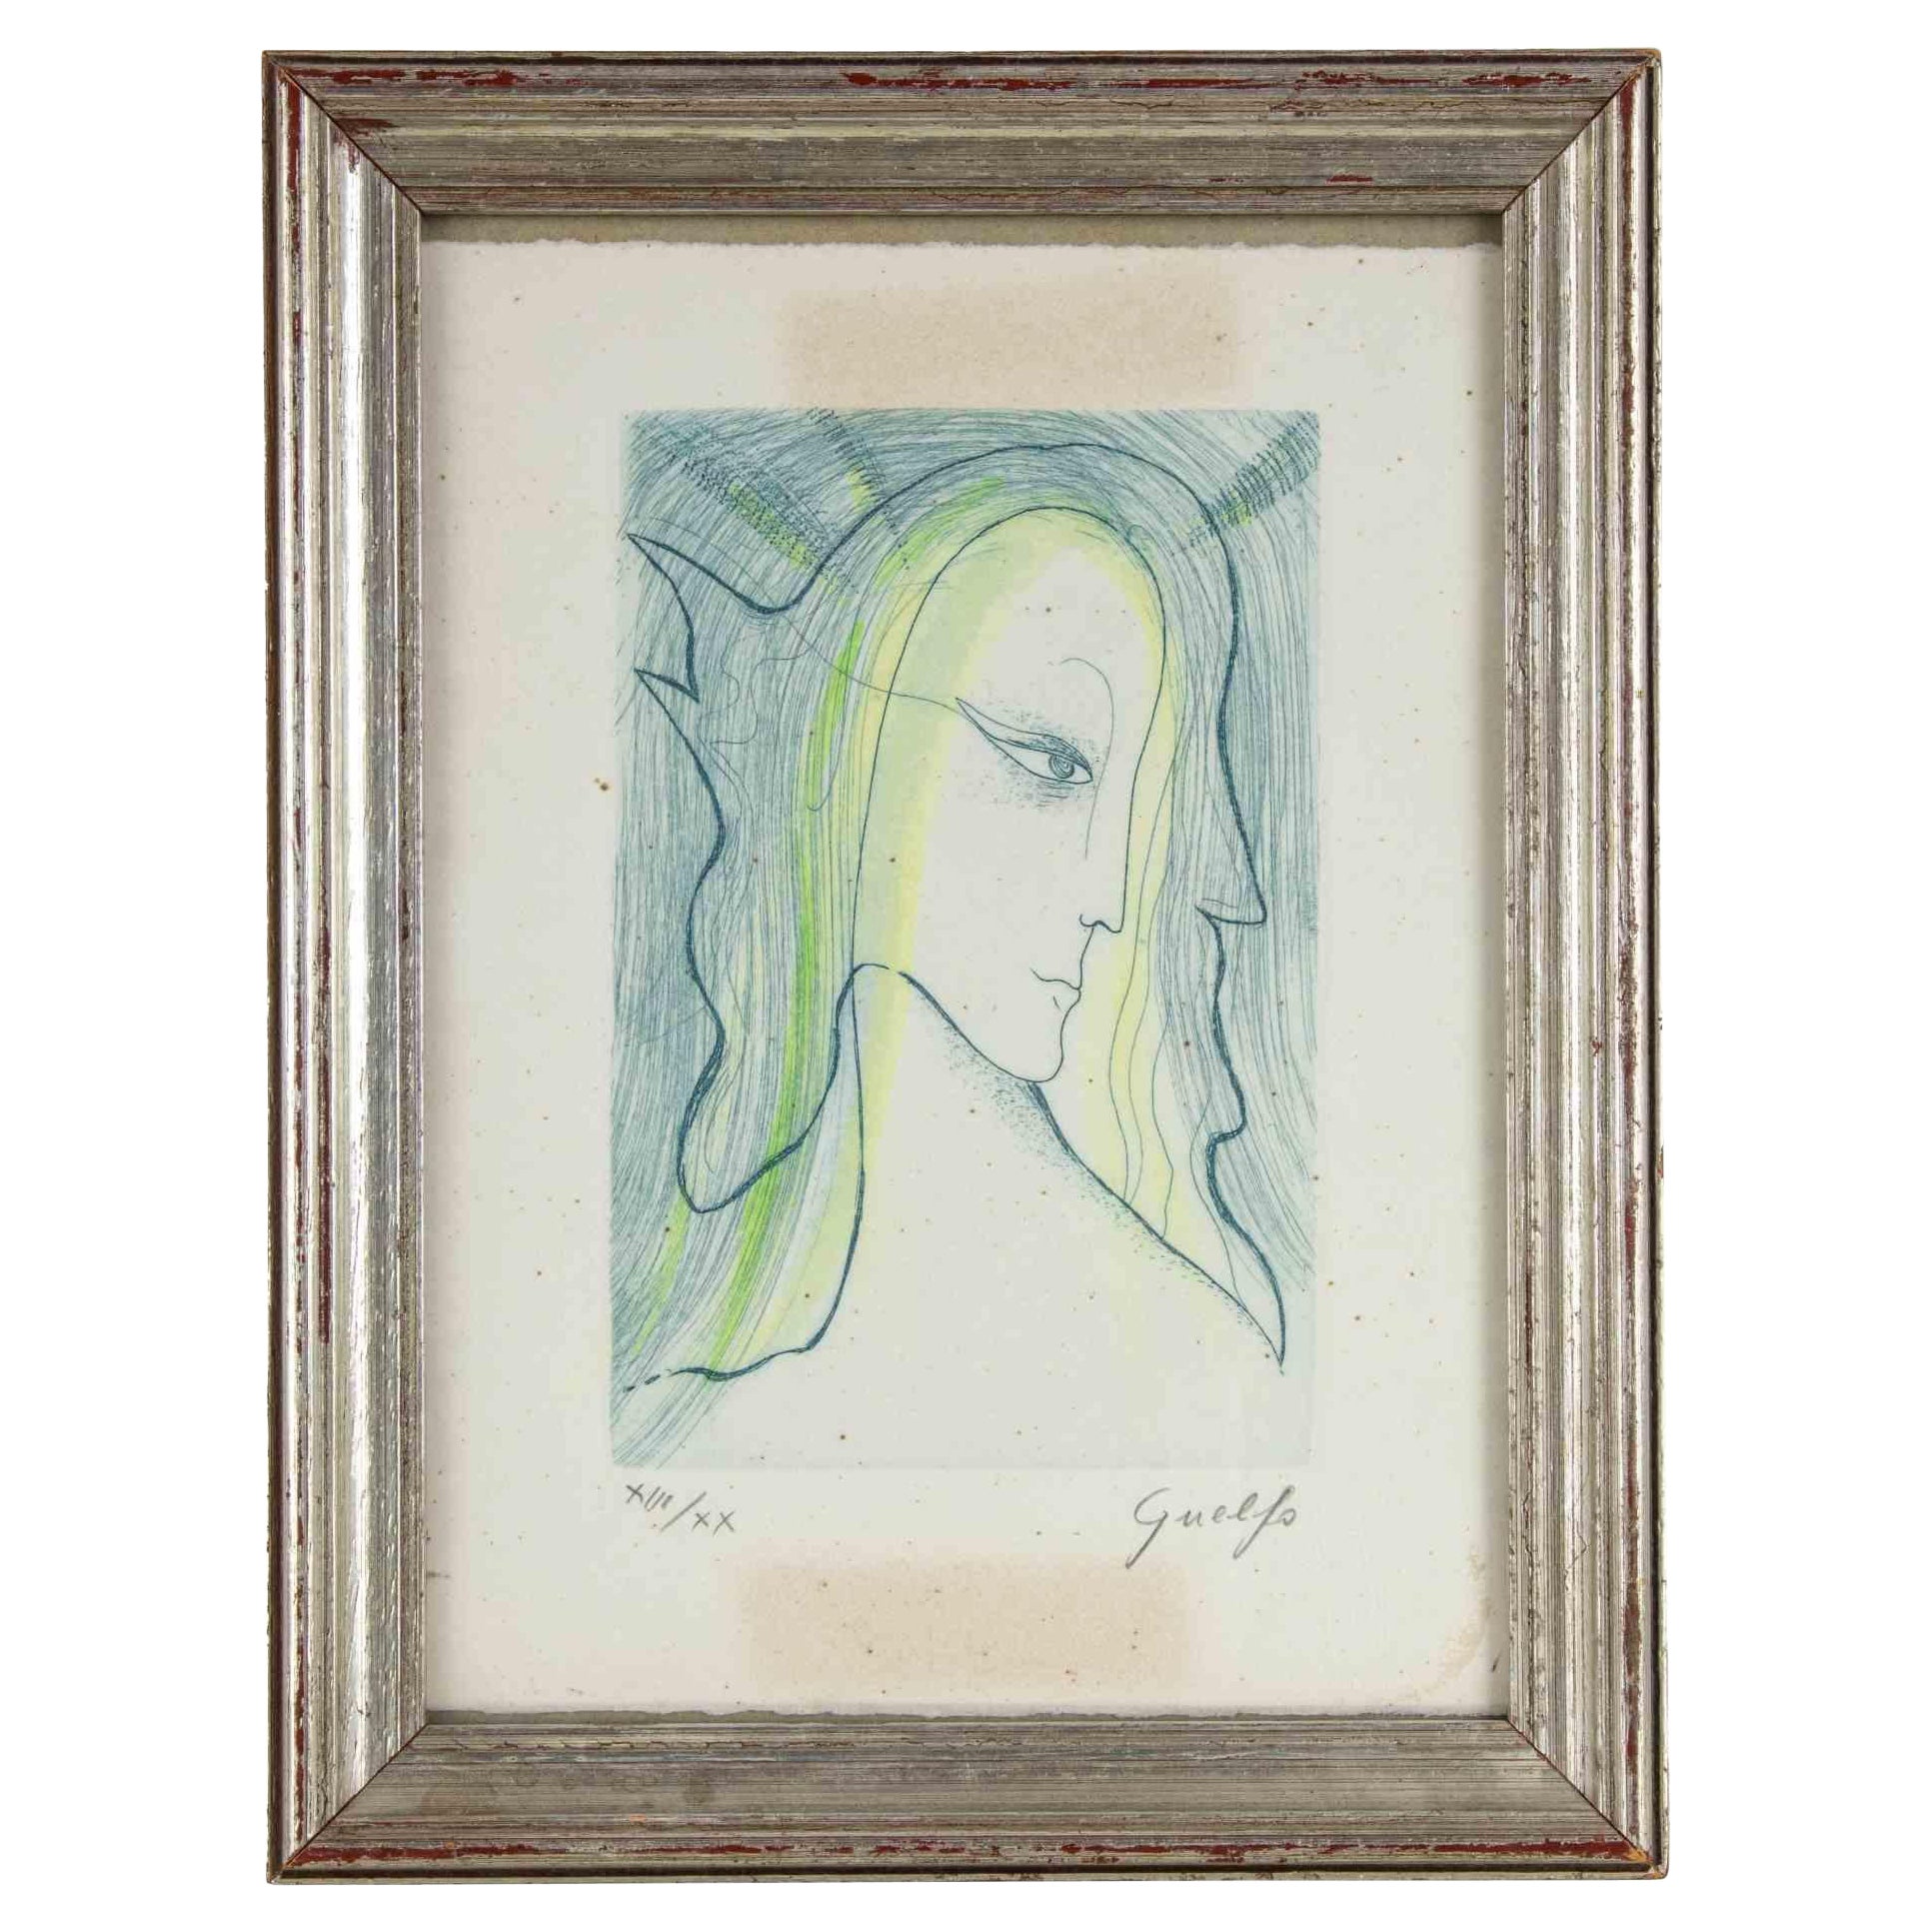 L'ange est une œuvre d'art moderne originale réalisée en Italie par Guelfo Bianchini (Ancône, 1937) en 1984.

Gravure originale en couleur sur papier. 

Signé à la main dans le coin inférieur droit. Série à tirage limité, numérotée au crayon dans le